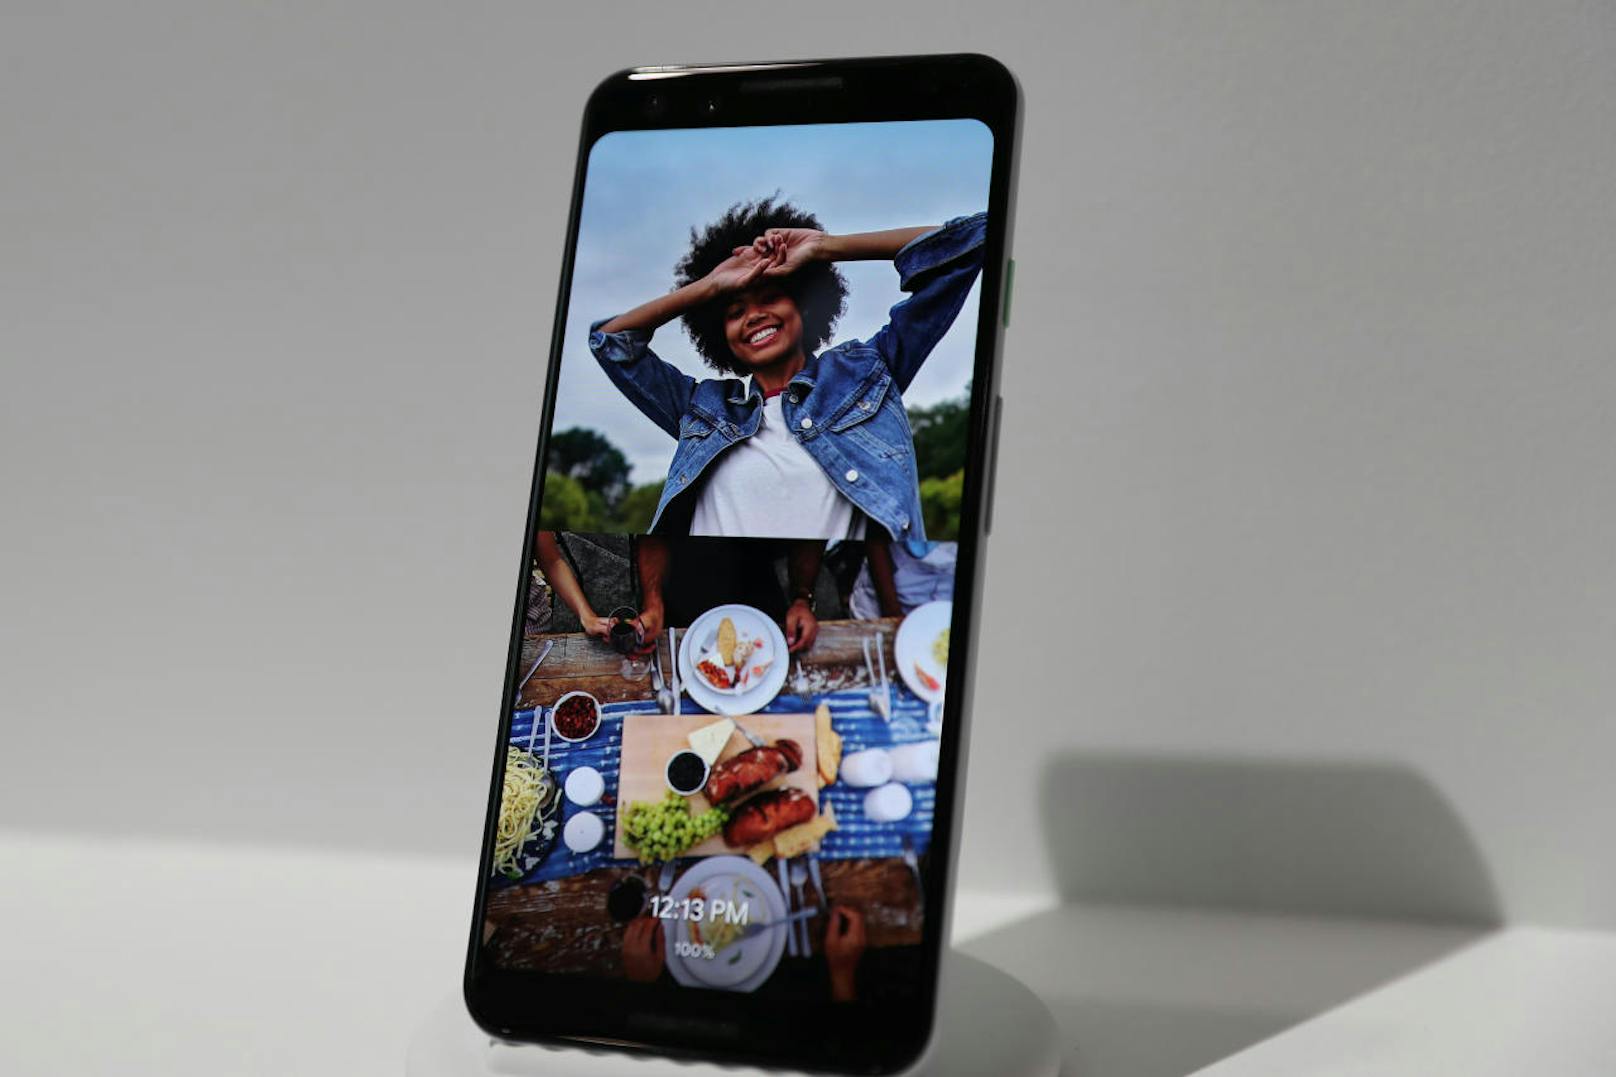 Die neuen Pixel-Phones zeigen beim Design wenig Abweichungen zu den bisherigen Google-Smartphones, im Inneren wurde stark auf Künstliche Intelligenz und die Kamera gesetzt.